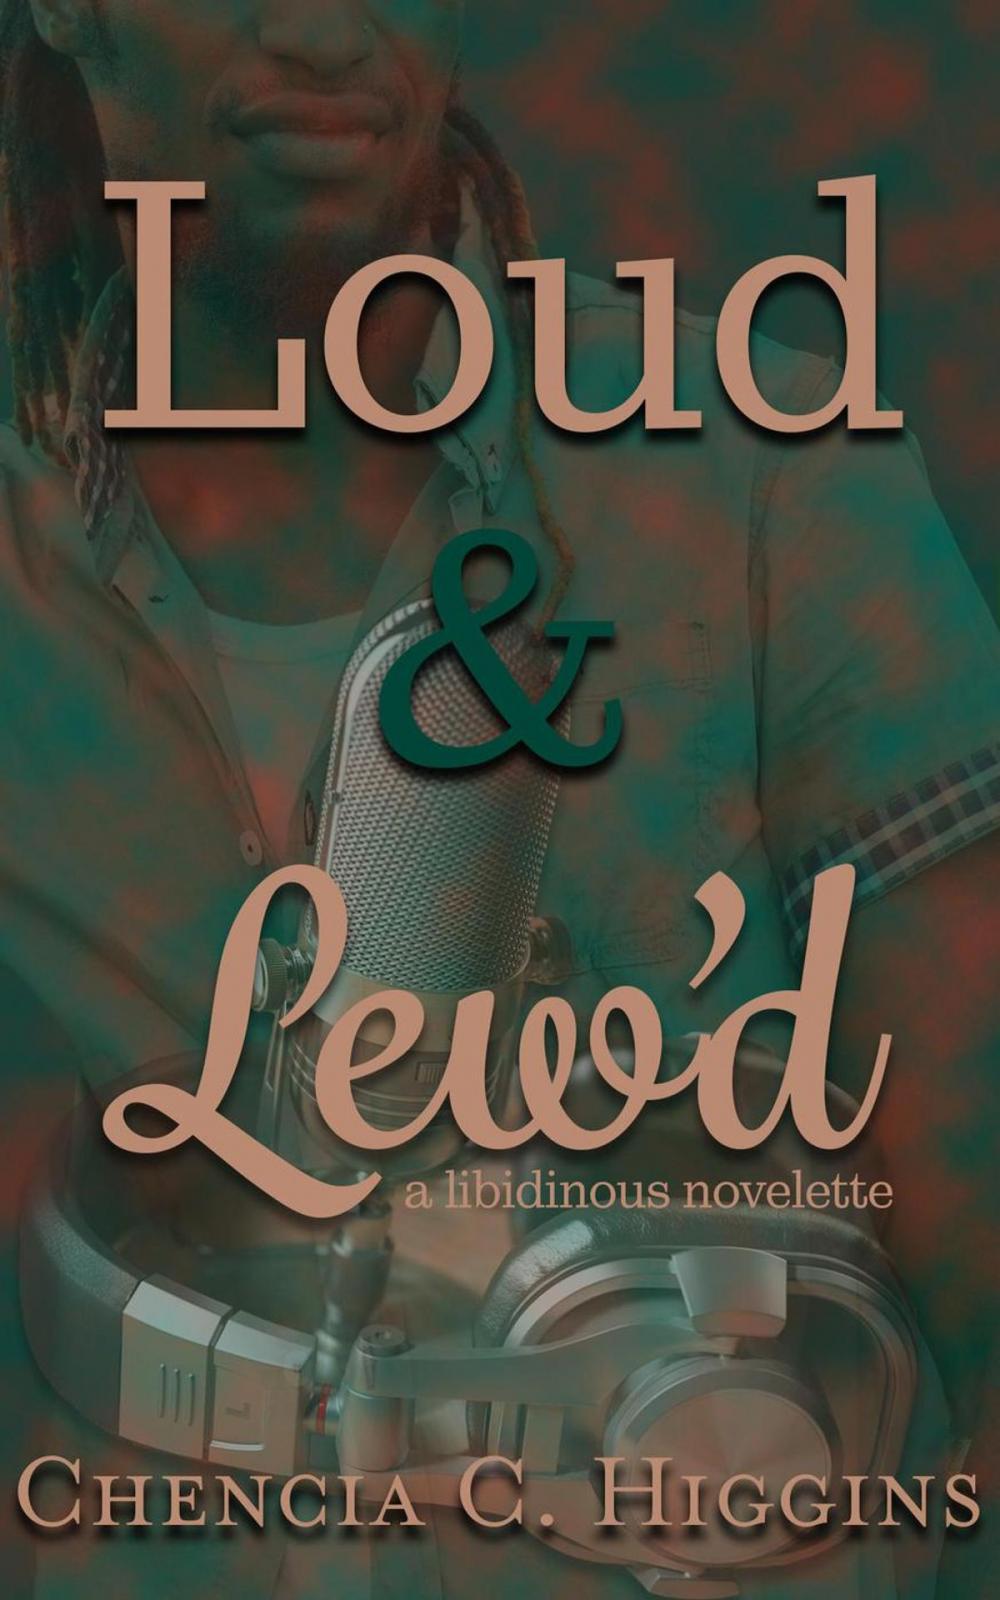 Big bigCover of Loud &amp; Lew'd: a Libidinous Novelette